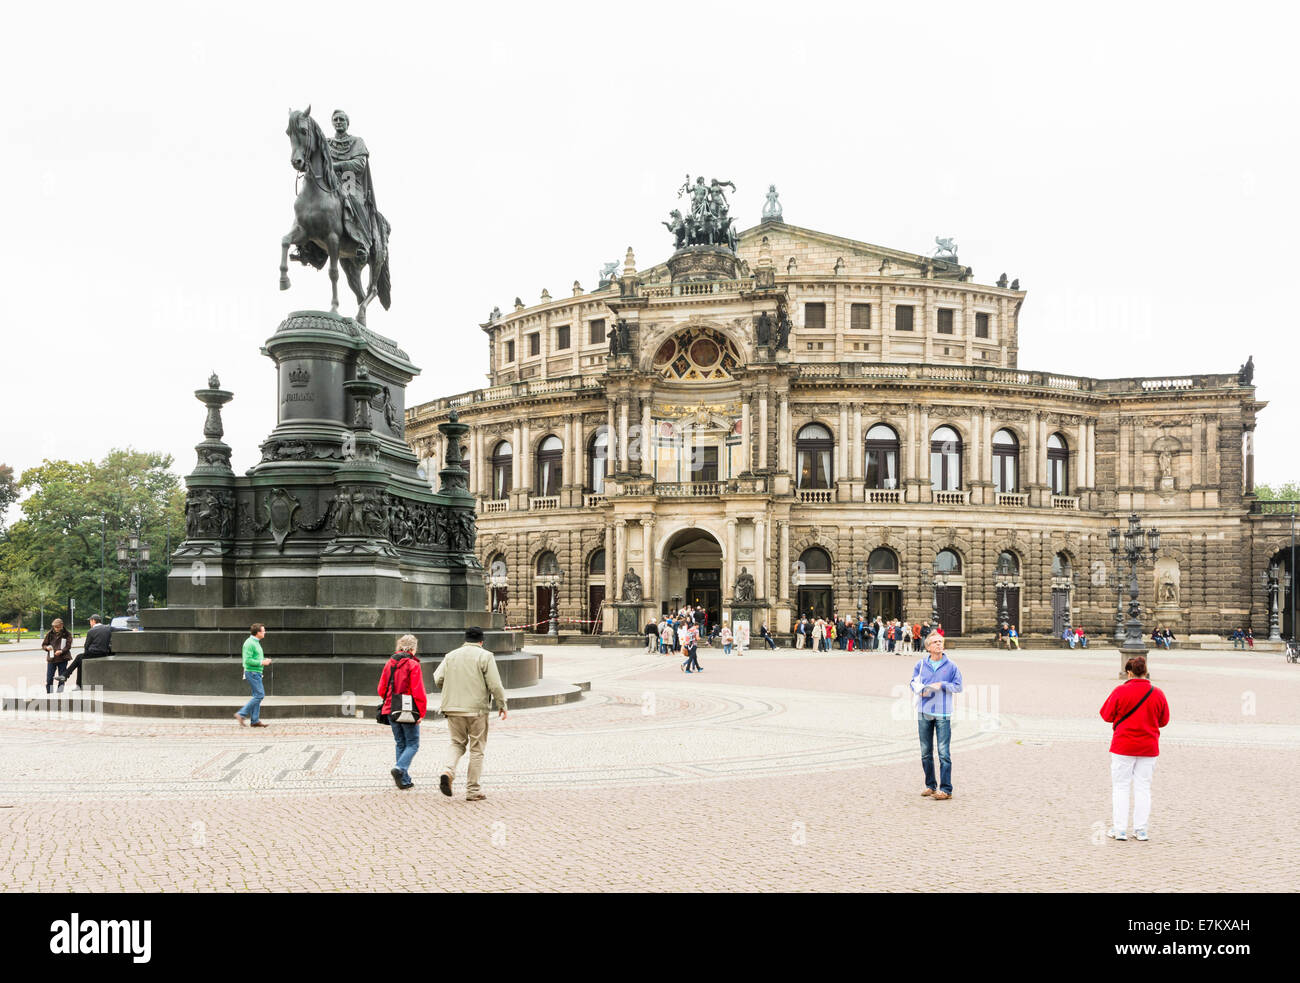 DRESDEN, Alemania - 4 de septiembre: Turistas en la Opera Semper en Dresden, Alemania, el 4 de septiembre de 2014. Foto de stock